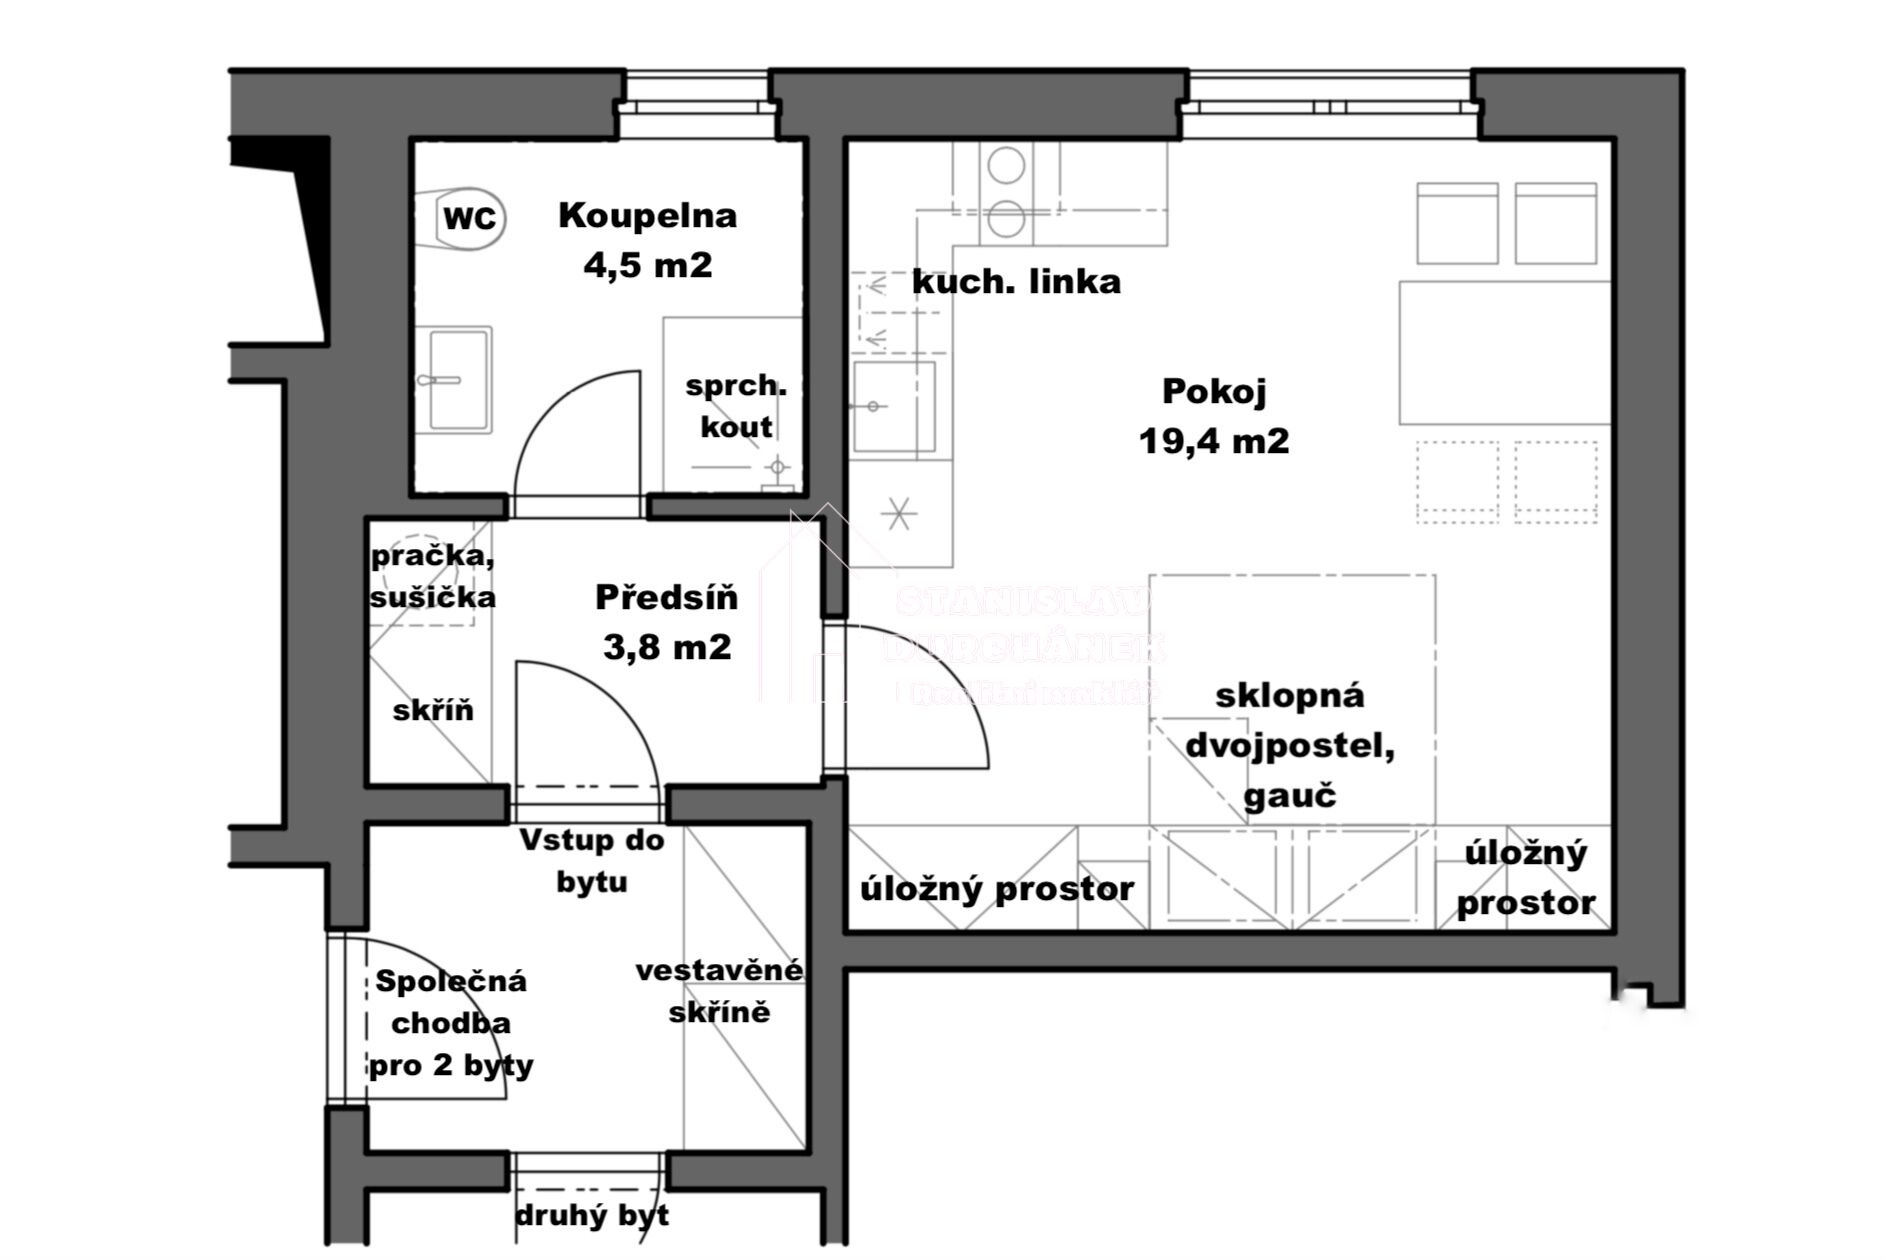 Pronájem vybaveného bytu 1+kk, 28 m2, Praha 8-Střížkov, ulice Střížkovská, 5 minut od metra